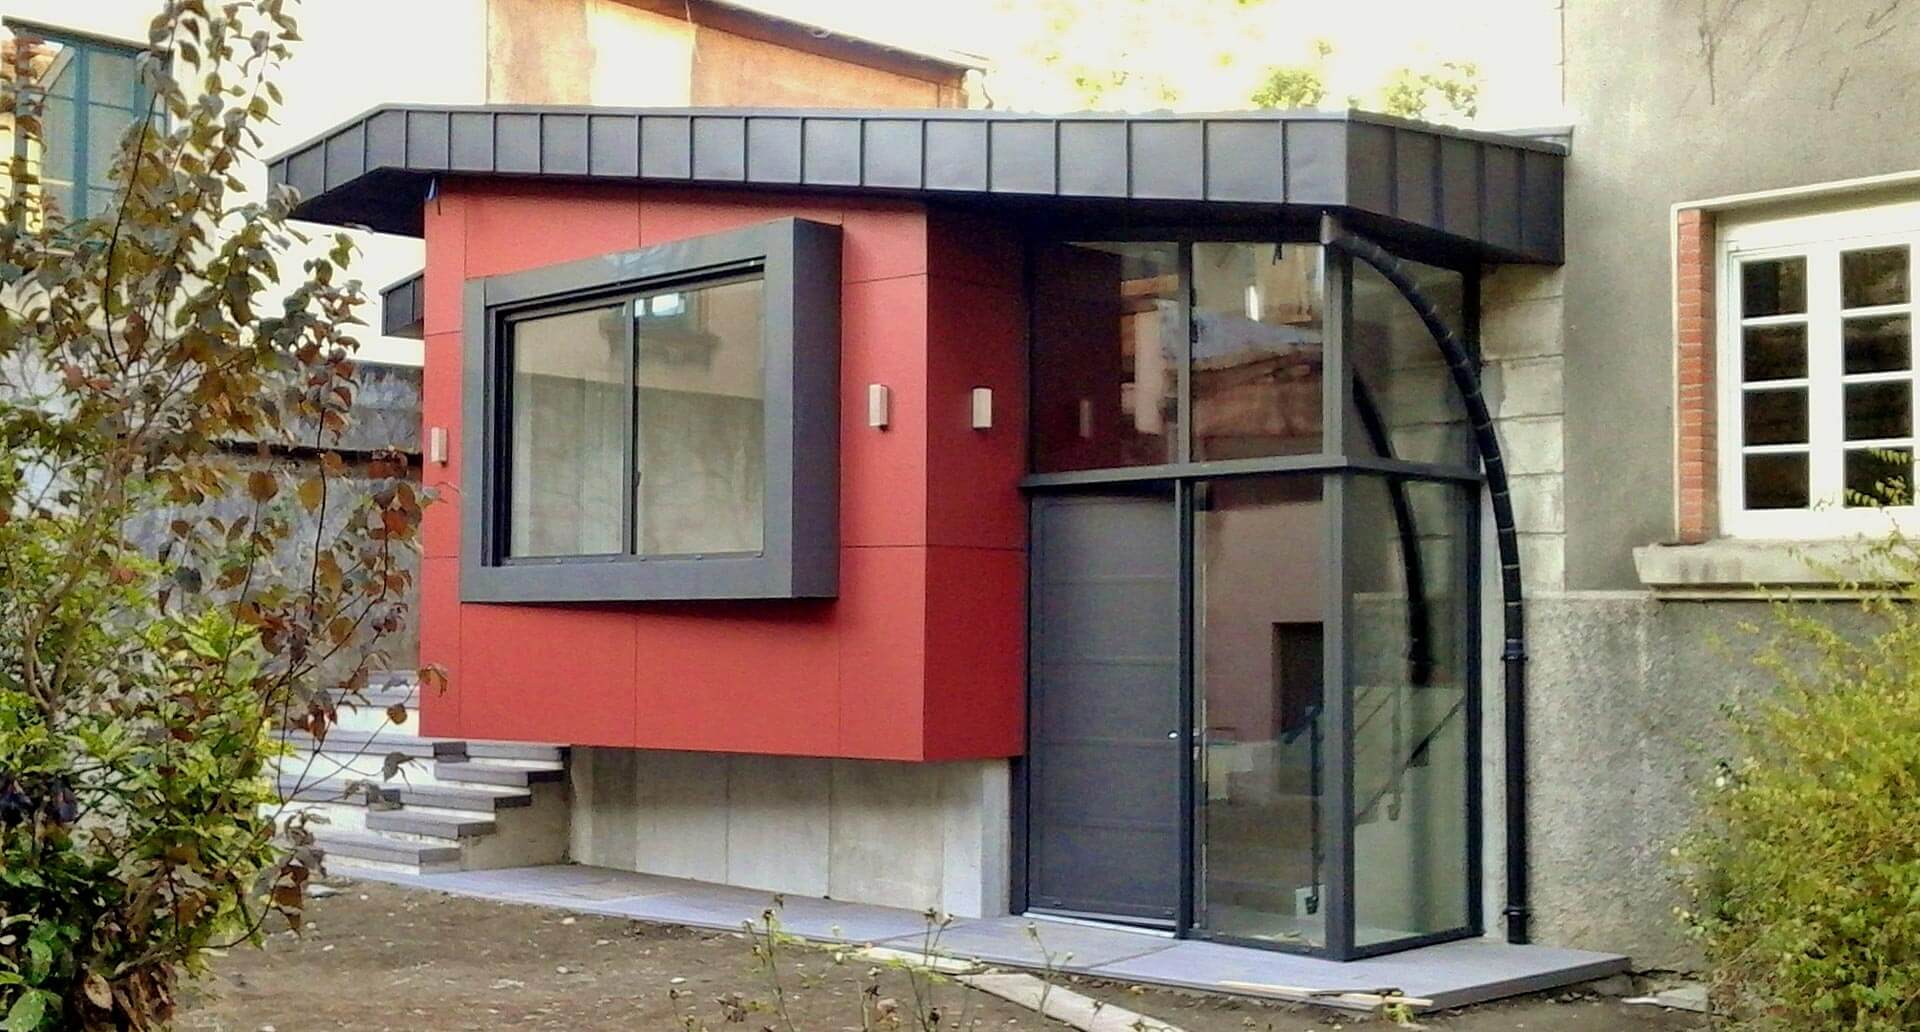 Lire la suite à propos de l’article Extensions ossature bois à toit plat pour votre maison à Lyon : CERTA vous informe